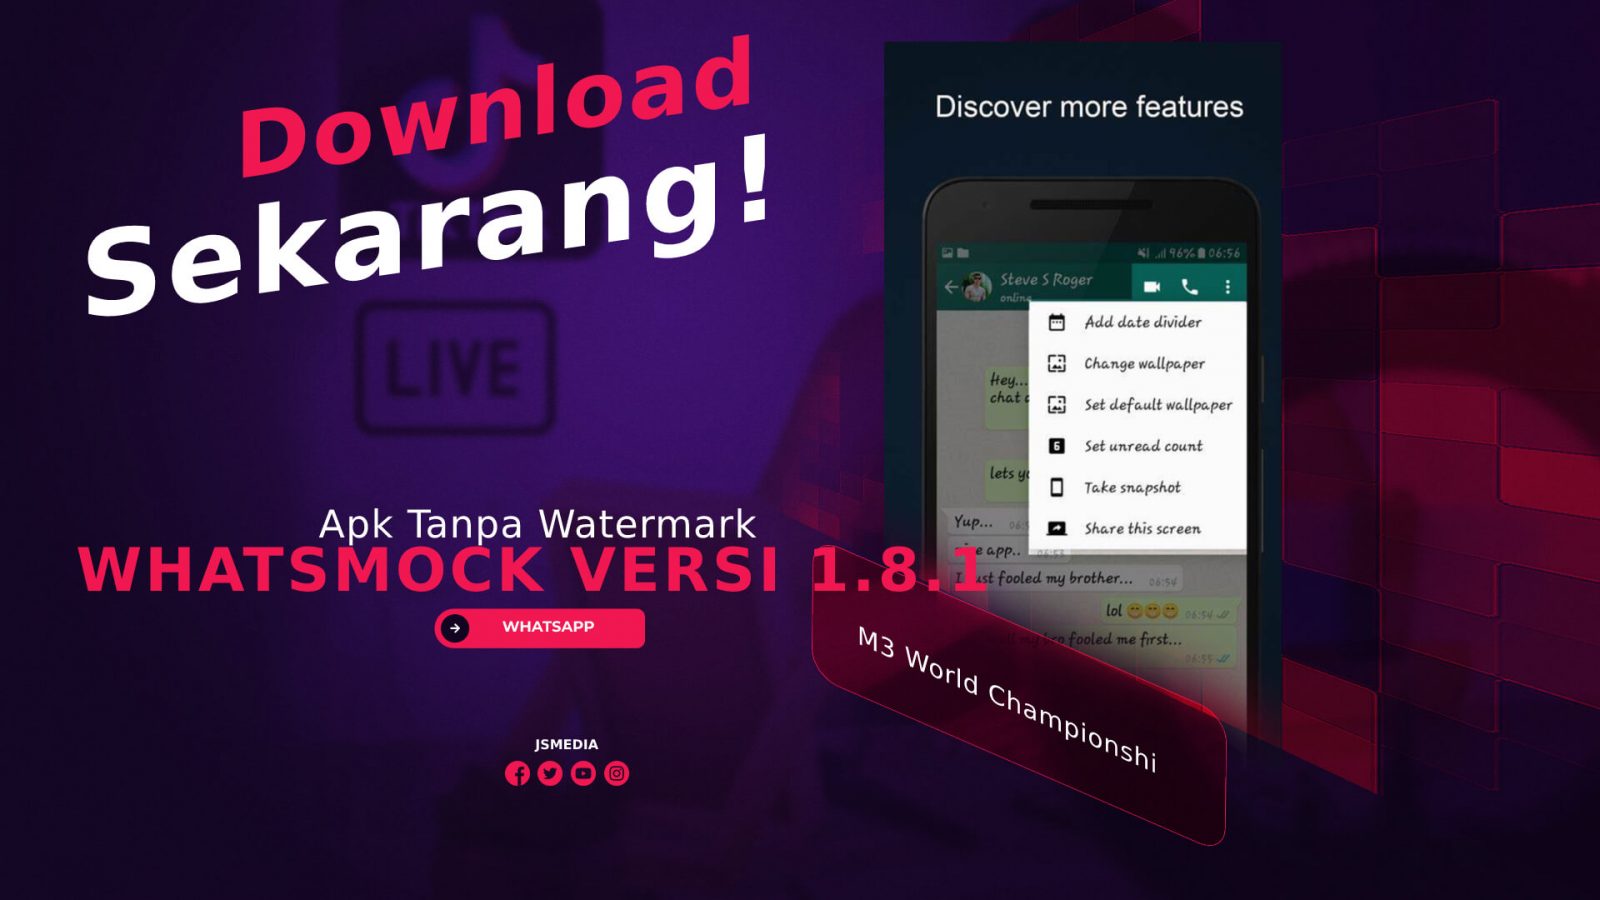 WhatsMock Versi 1.8.1 Apk Tanpa Watermark, Download Sekarang!